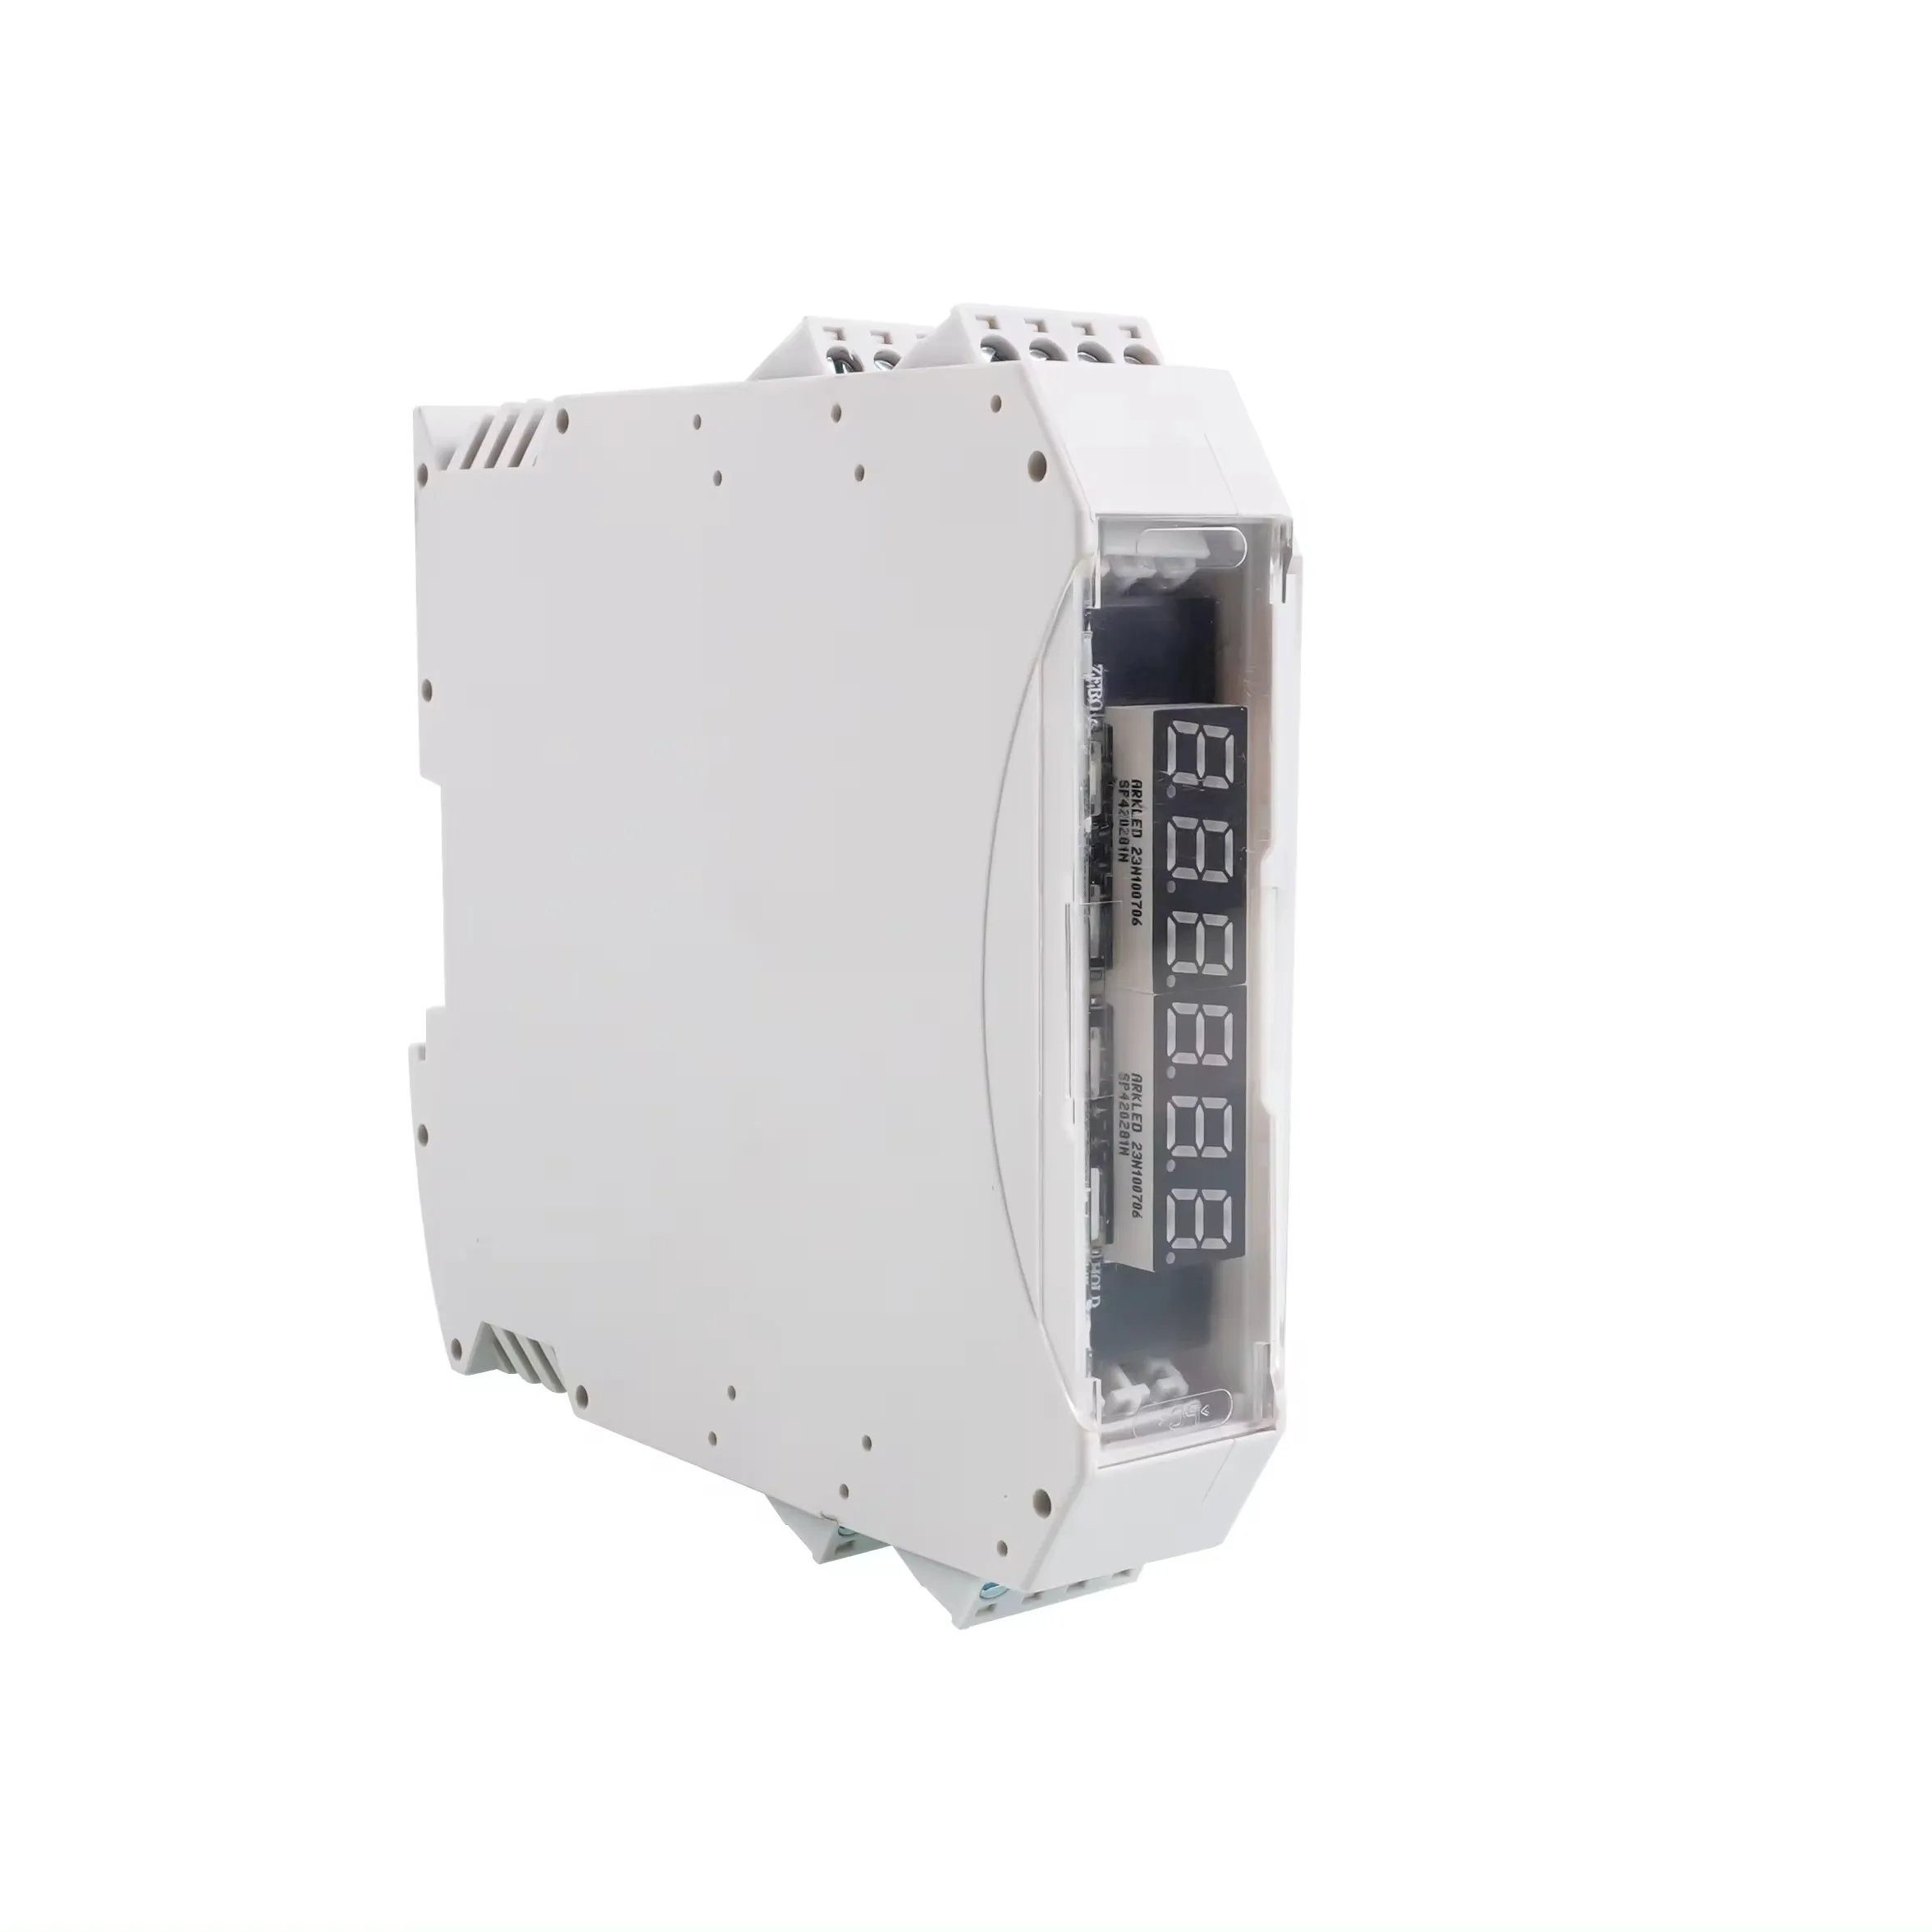 TM35 distribuidor mayorista precio a granel transmisor de peso digital medidor de tensión amplificador Indicador de peso RS485 salida